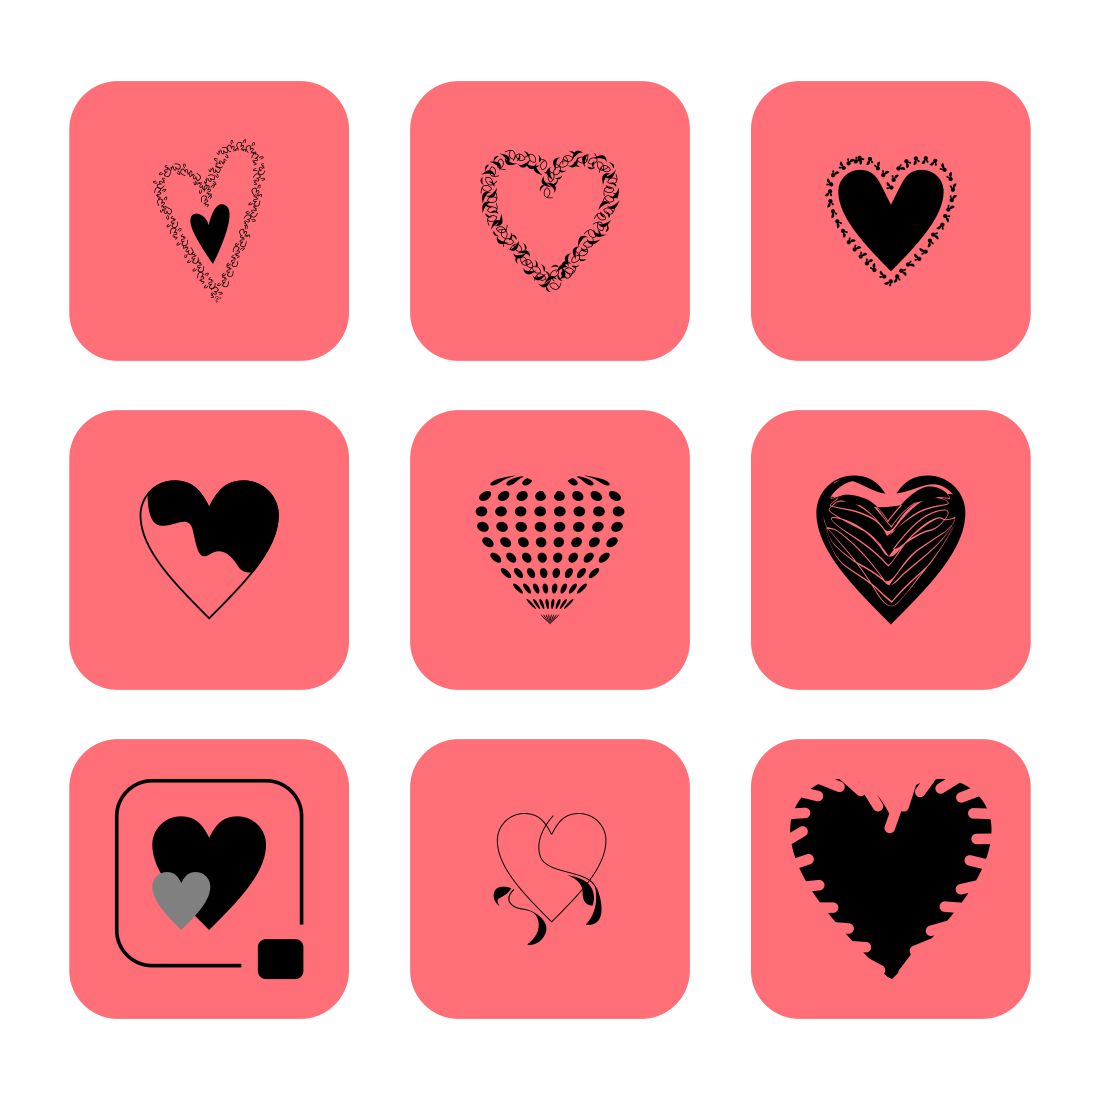 Heart Icon Design cover image.